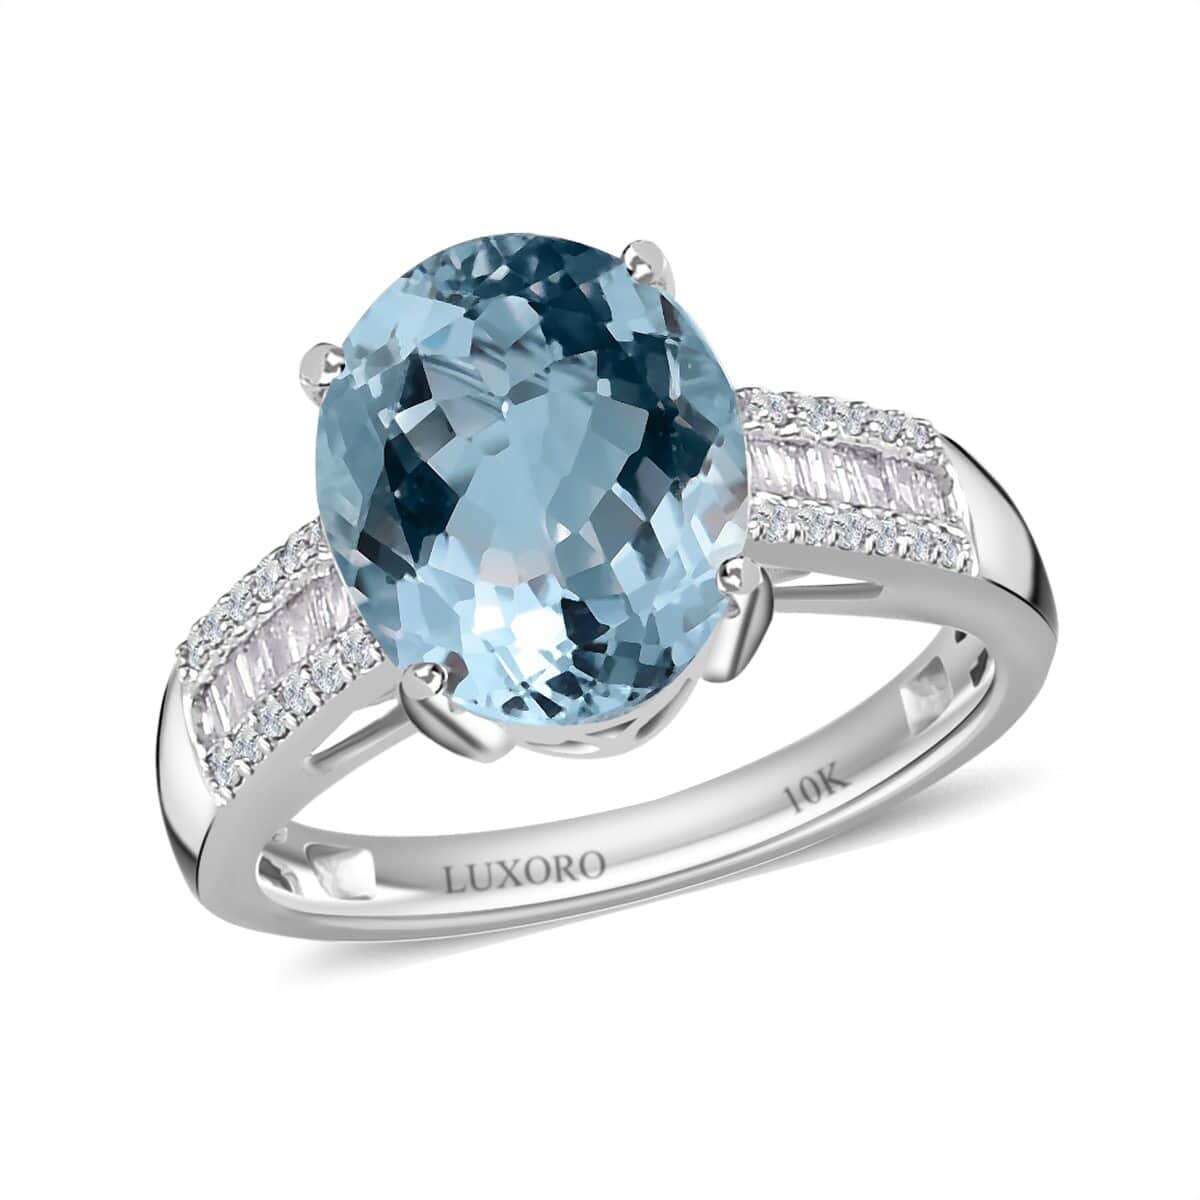 Luxoro 10K White Gold Premium Mangoro Aquamarine and Diamond Ring (Size 10.0) 3.40 ctw image number 0